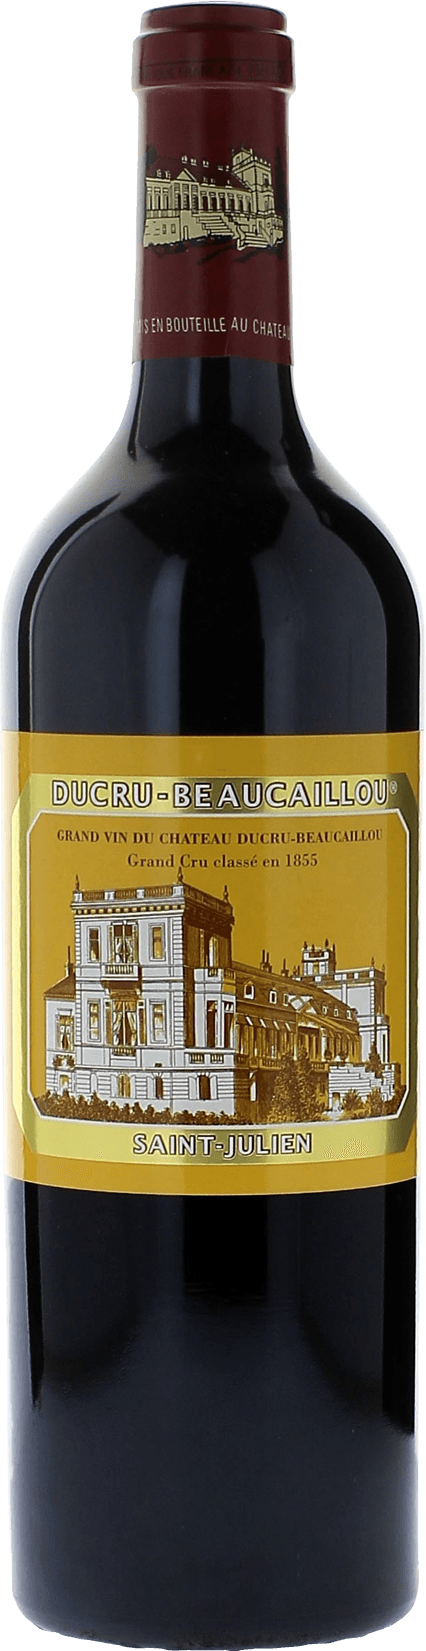 Ducru beaucaillou 1986 2me Grand cru class Saint-Julien, Bordeaux rouge